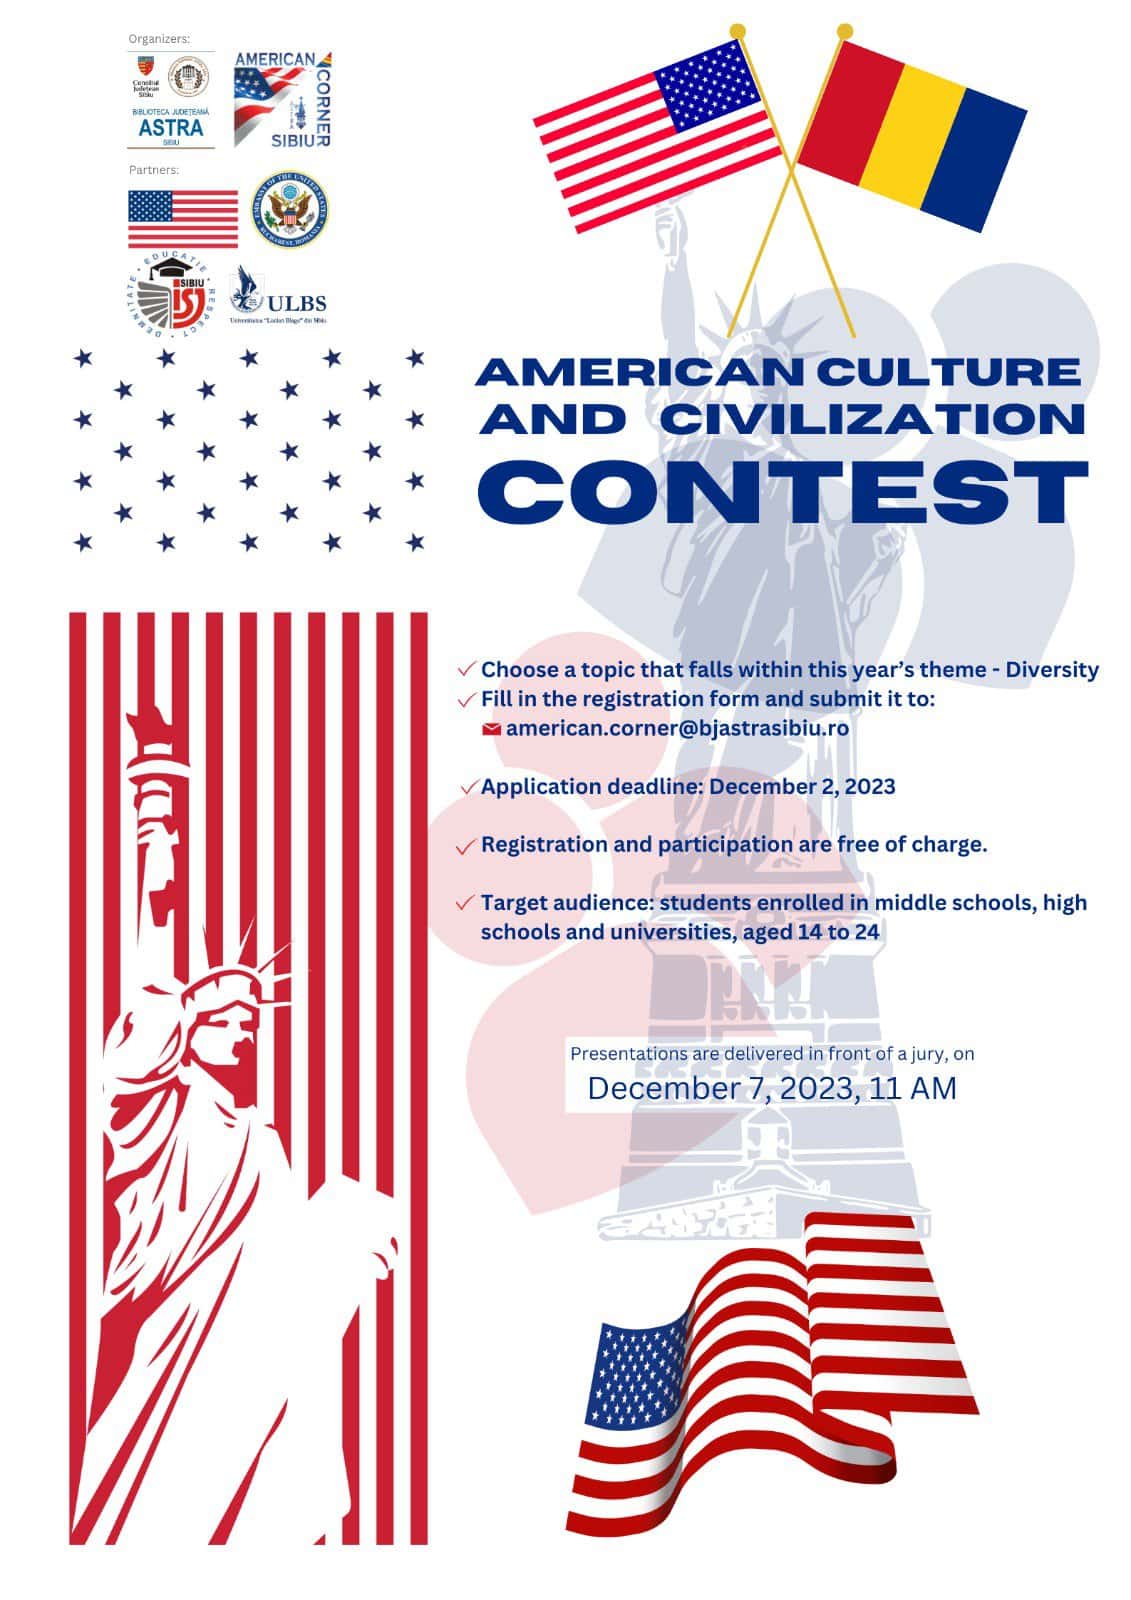 elevii și studenții din sibiu sunt invitați să participe la un concurs de cultură americană